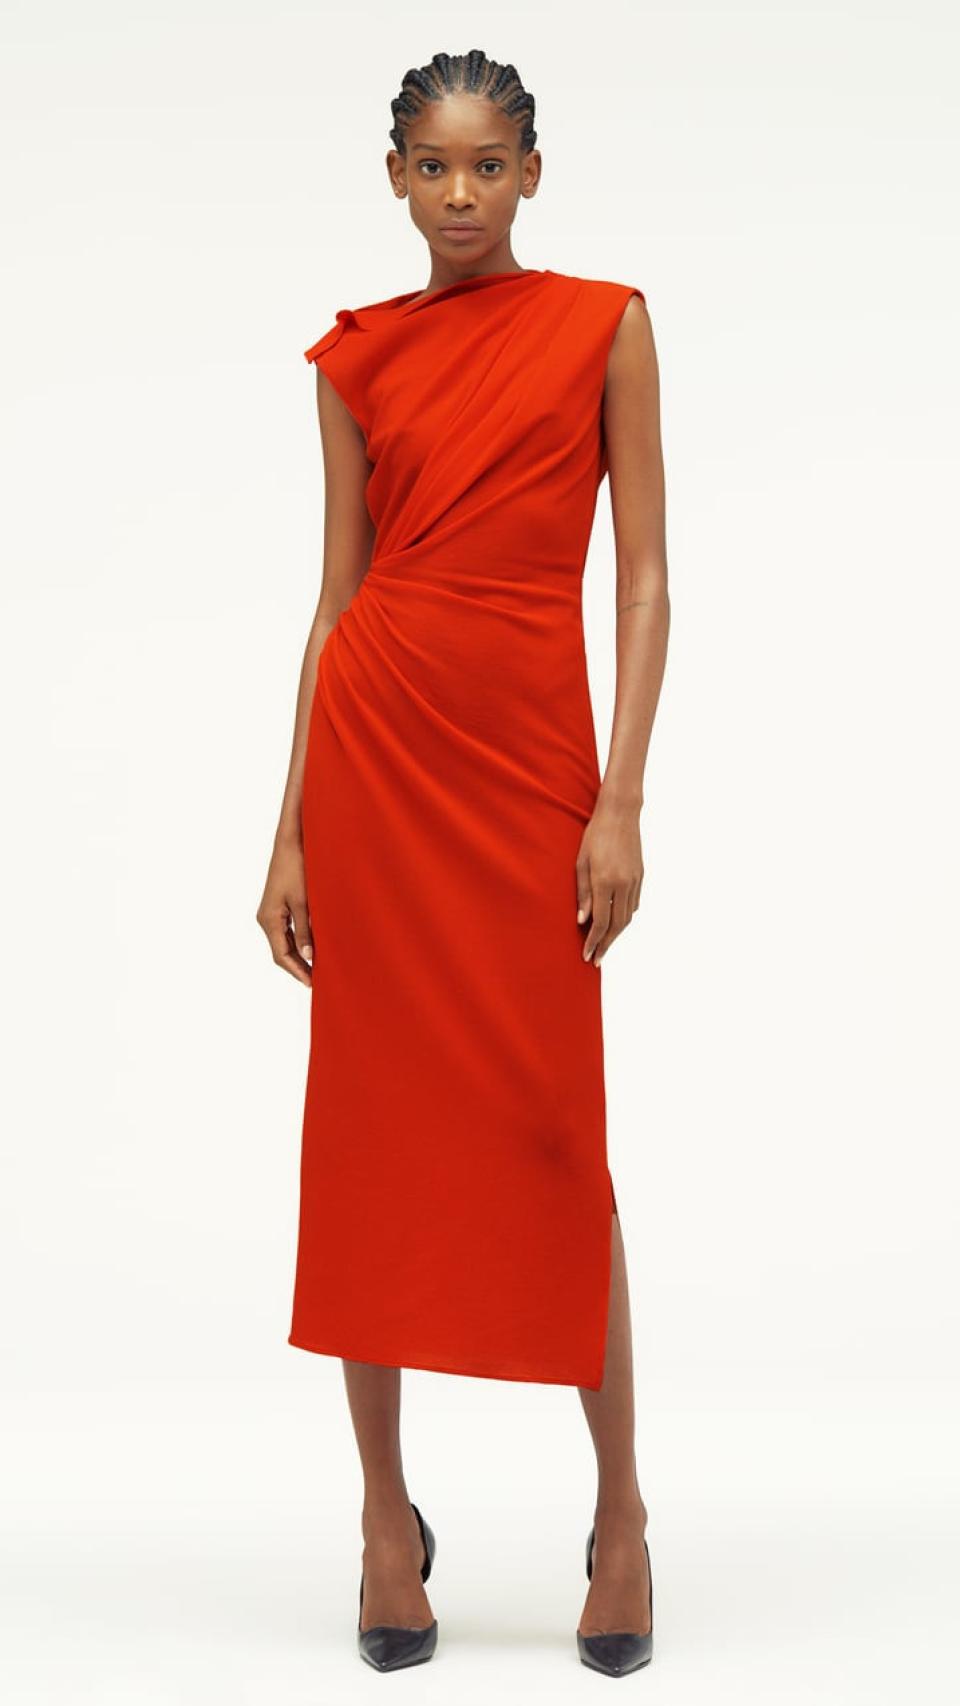 El vestido naranja de Narciso Rodriguez para Zara que ha agotado en cuestión horas